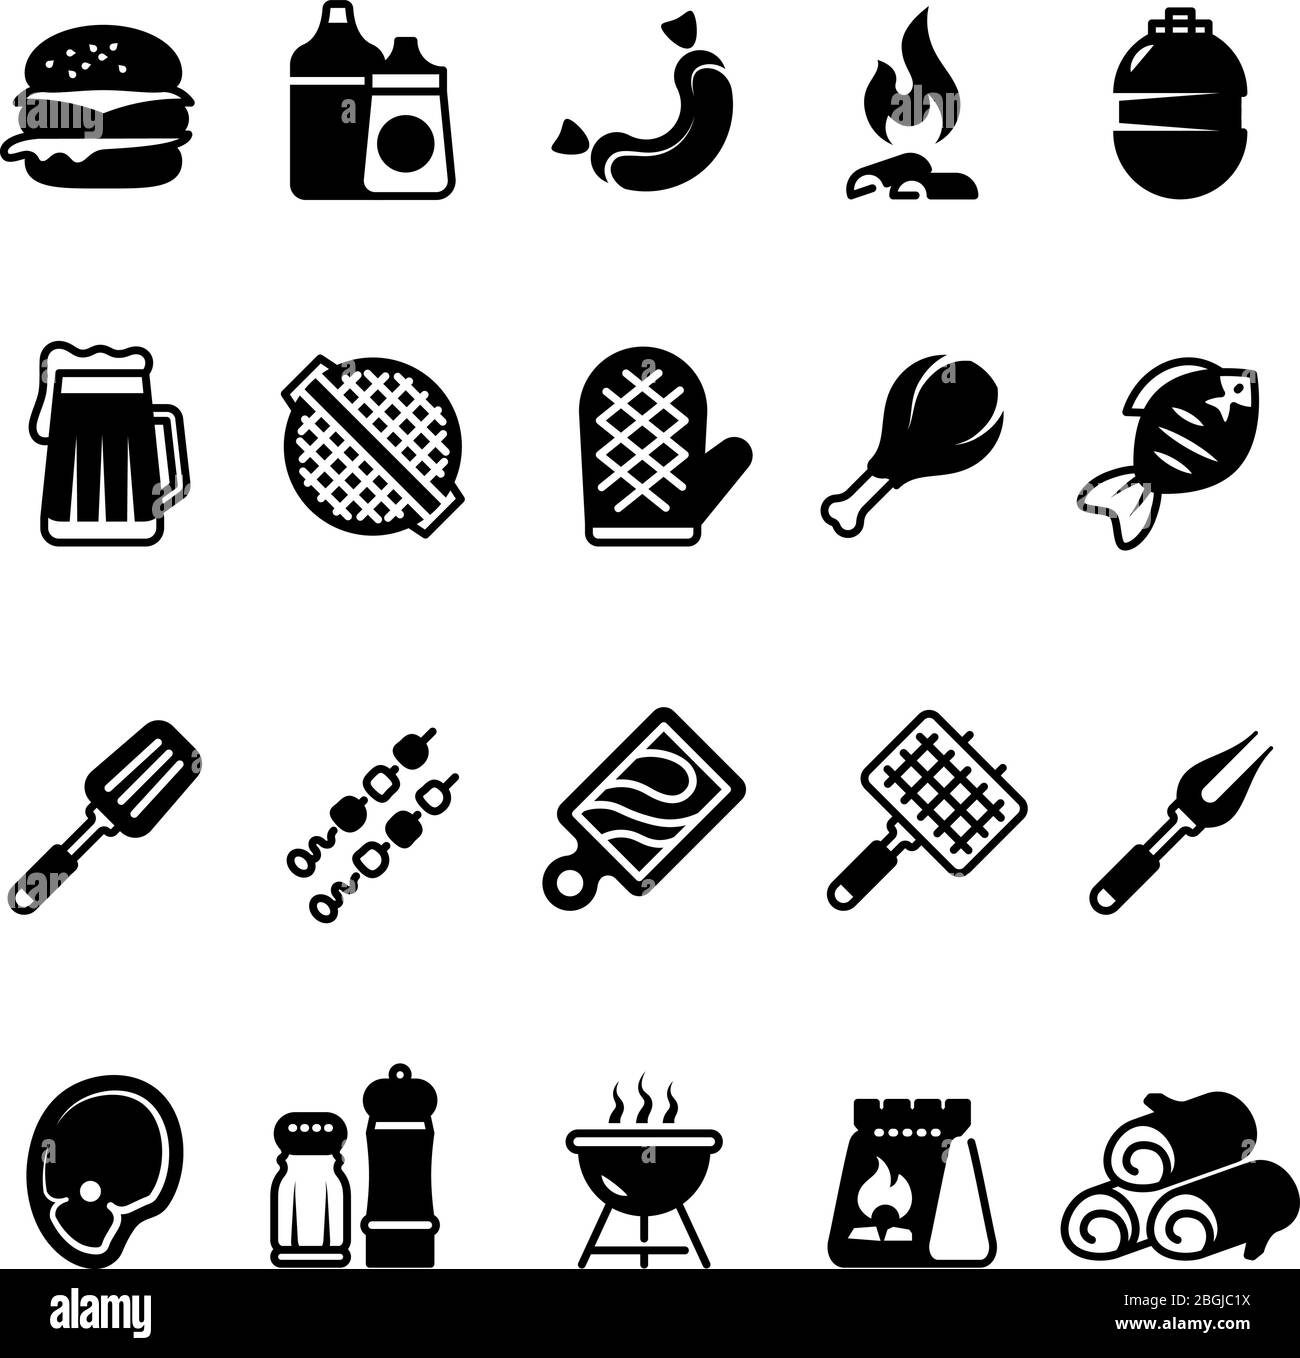 Grille des icônes de cuisine extérieure. barbecue familial, symboles pique-nique d'été. Pictogrammes isolés pour barbecue de viande et de légumes. Barbecue au grill et steak de viande au barbecue, illustration vectorielle Illustration de Vecteur